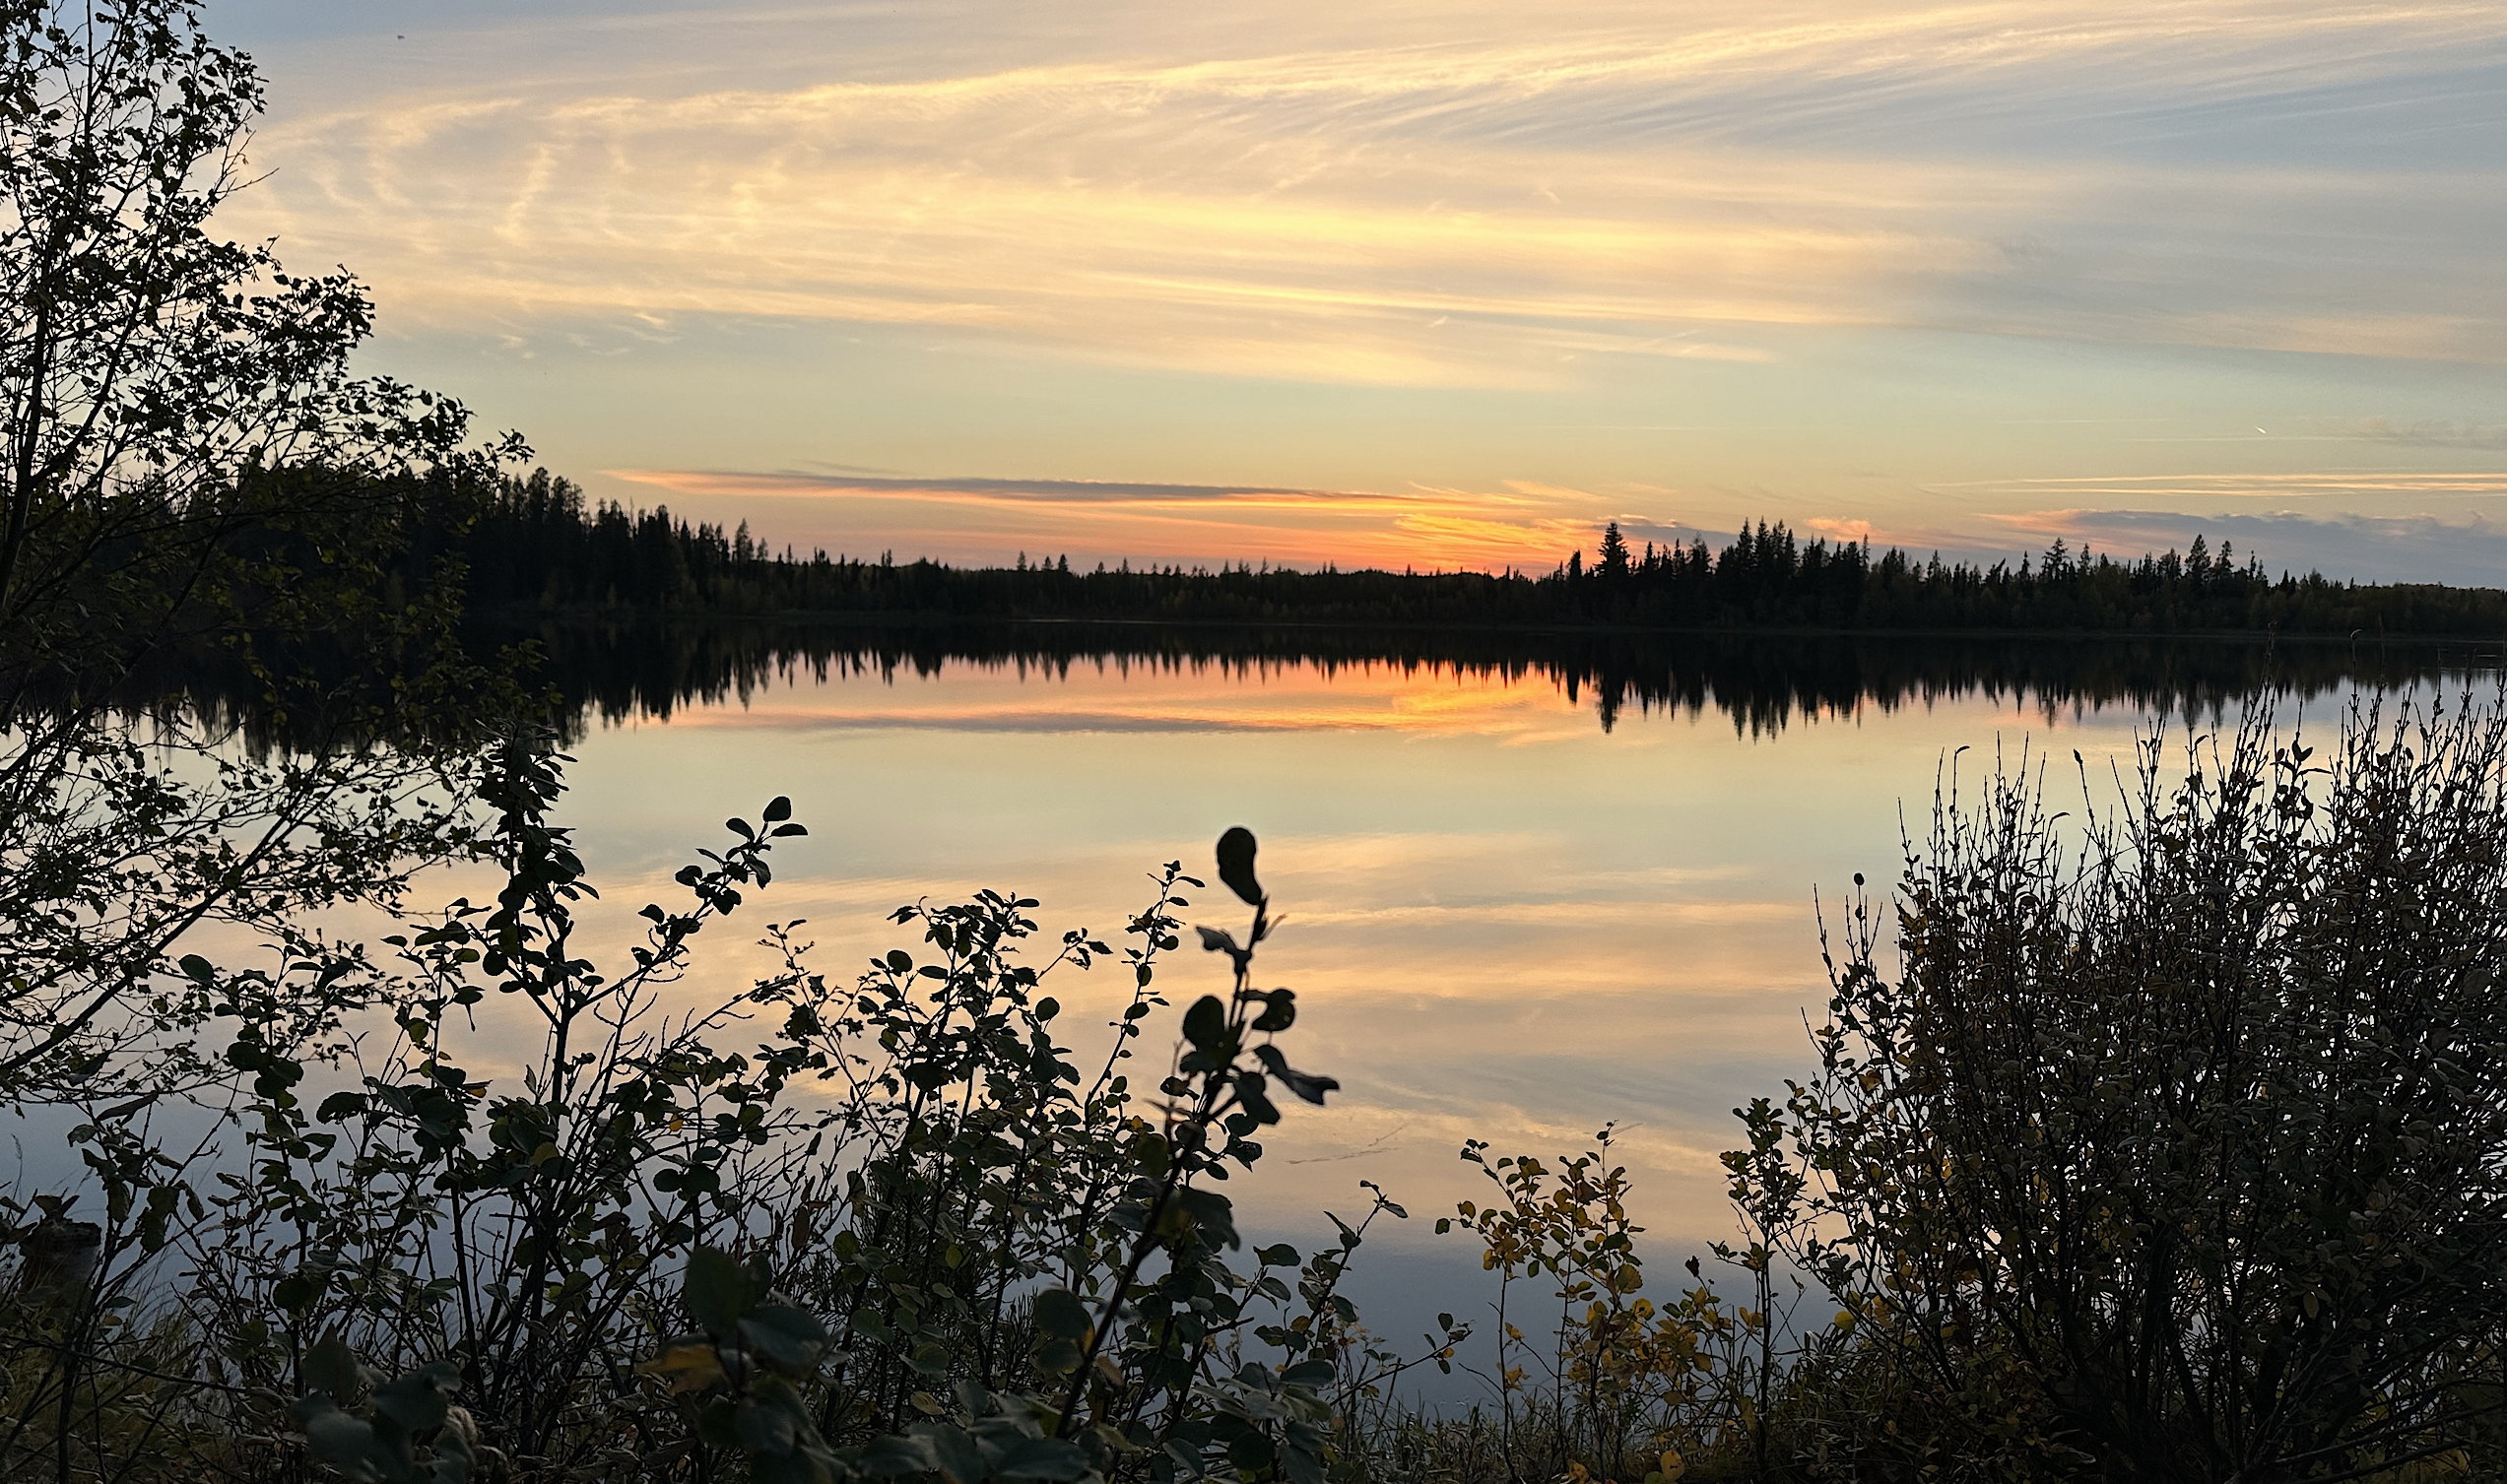 Ole's Lake bei Sonnenuntergang. Die Oberfläche ist spiegelglatt. Das Sonnenlicht manifestiert sich in einem orangen tiefen Schein am Horizont. Die Bäume wirken wie Scherenschnitte